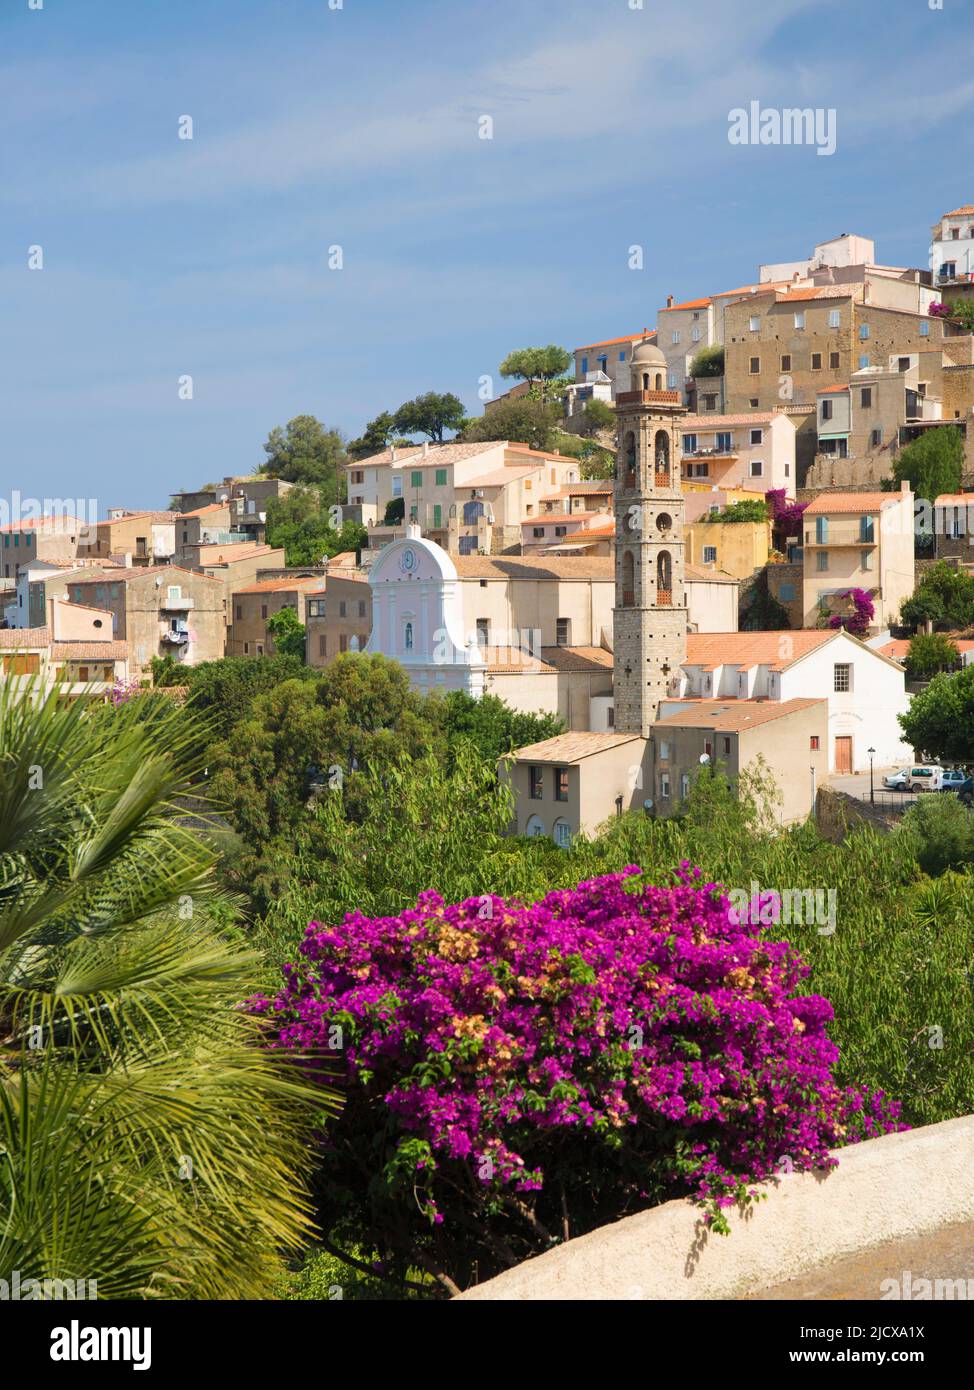 Dorfhäuser auf einem Hügel, die Kirche von Ste-Marie prominent, Lumio, Calvi Balagne, Haute-Corse, Korsika, Frankreich, Mittelmeer, Europa Stockfoto